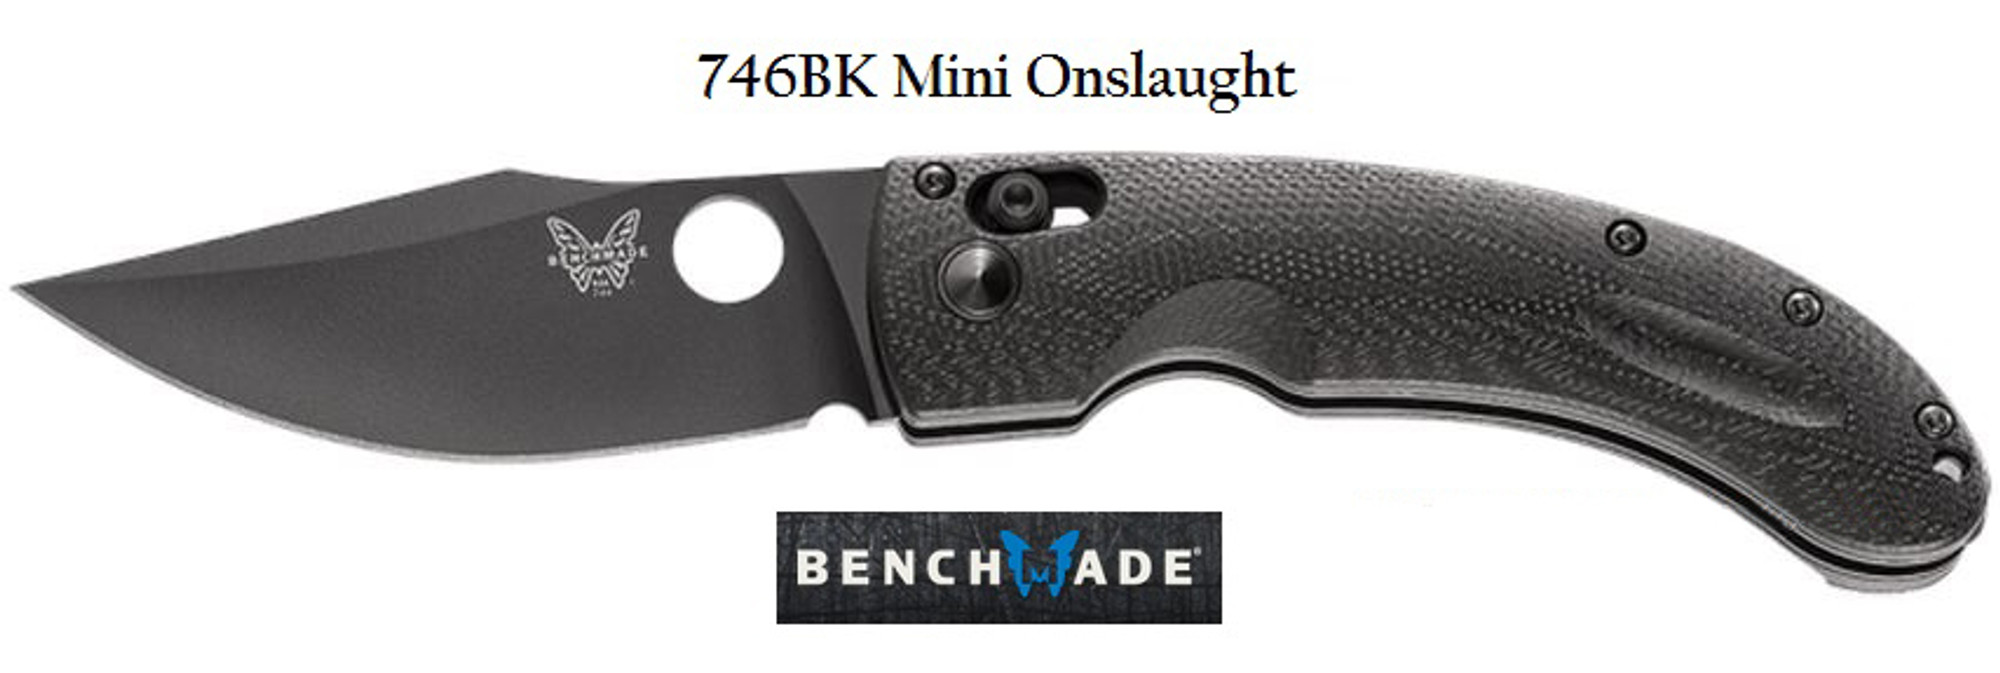 Benchmade 746BK Mini-Onslaught Black Plain Edge